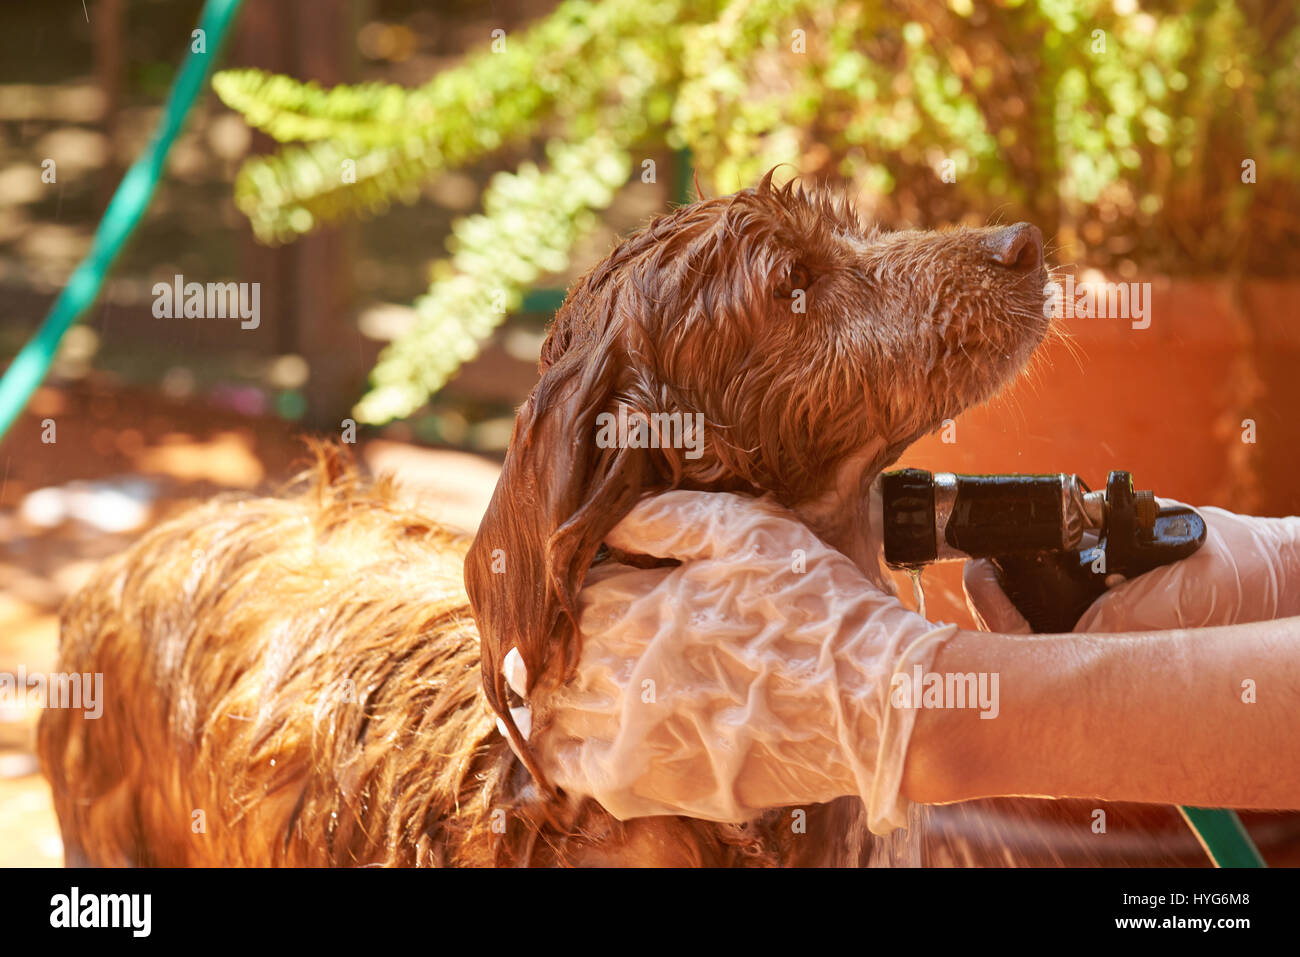 Washing brown spaniel dog pet. Wet spaniel animal dog. Grooming dog service Stock Photo